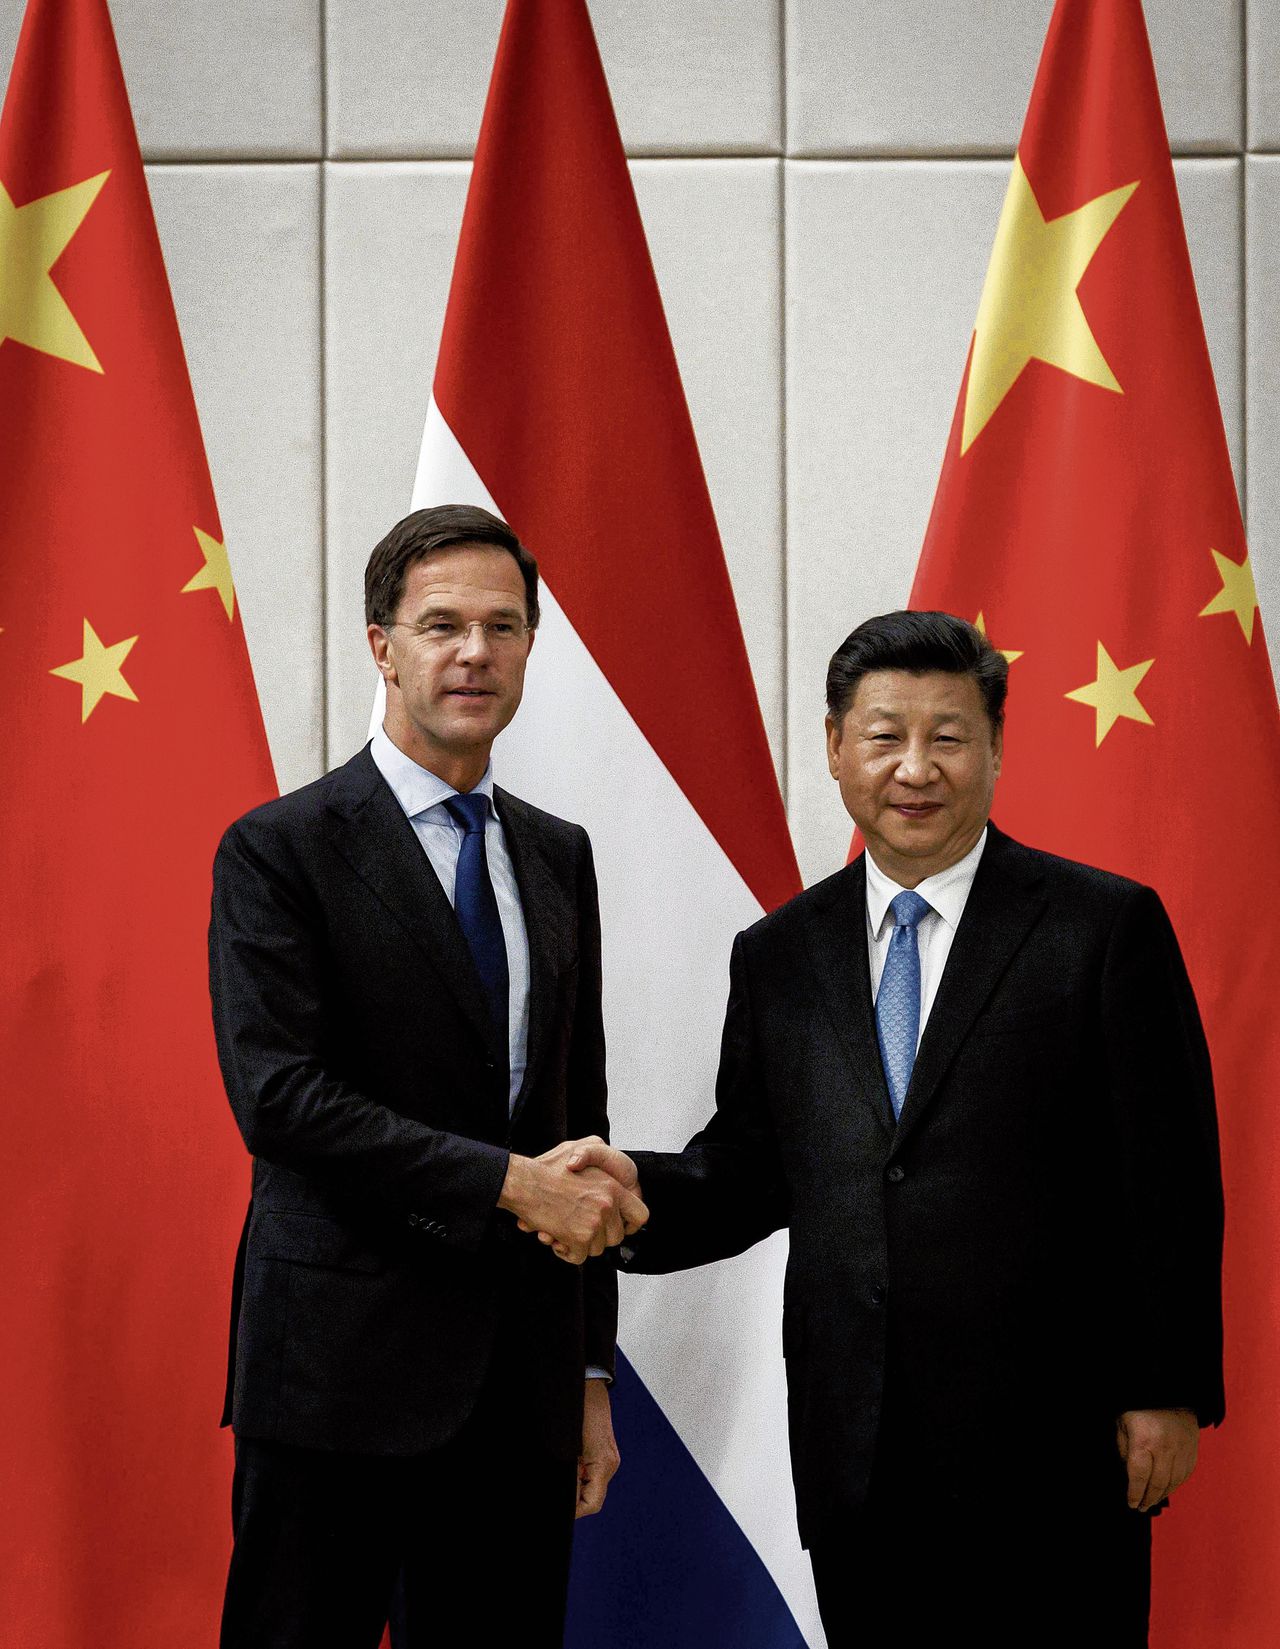 Mark Rutte en Xi Jinping schudden elkaar de hand. De premier is op bezoek in China in het kader van een handelsmissie.